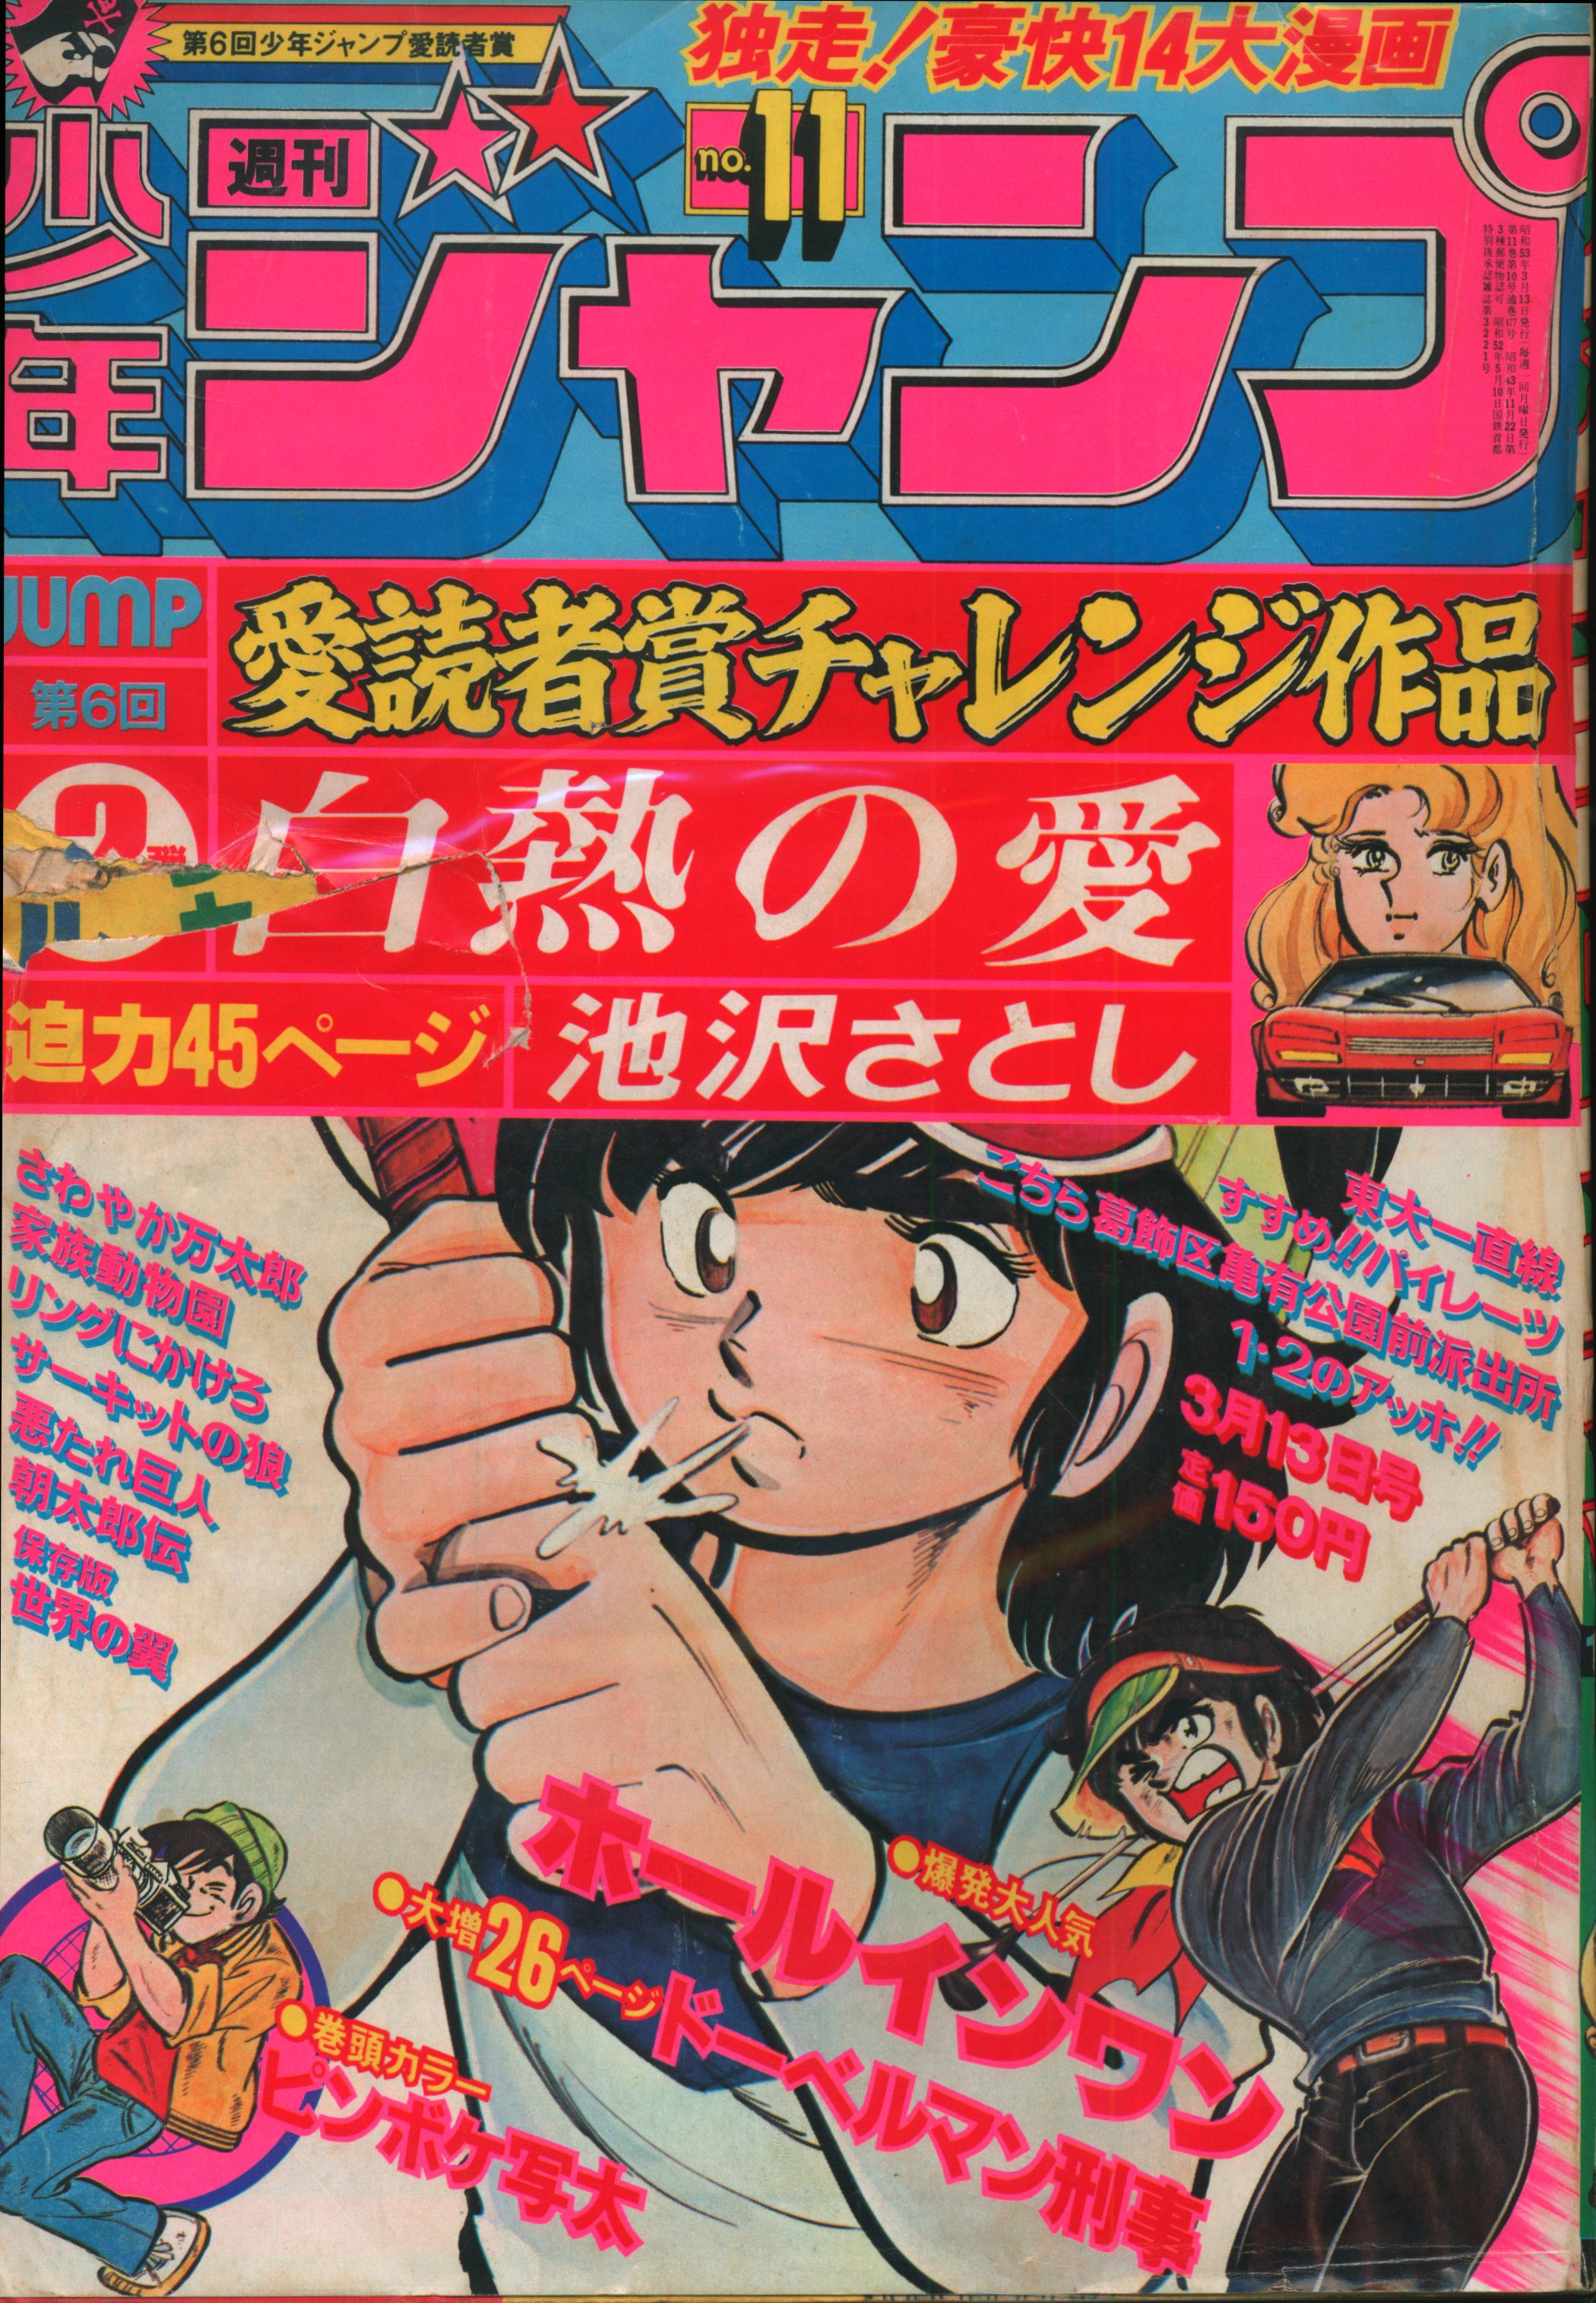 集英社 1978年(昭和53年)の漫画雑誌 週刊少年ジャンプ 1978年(昭和53年